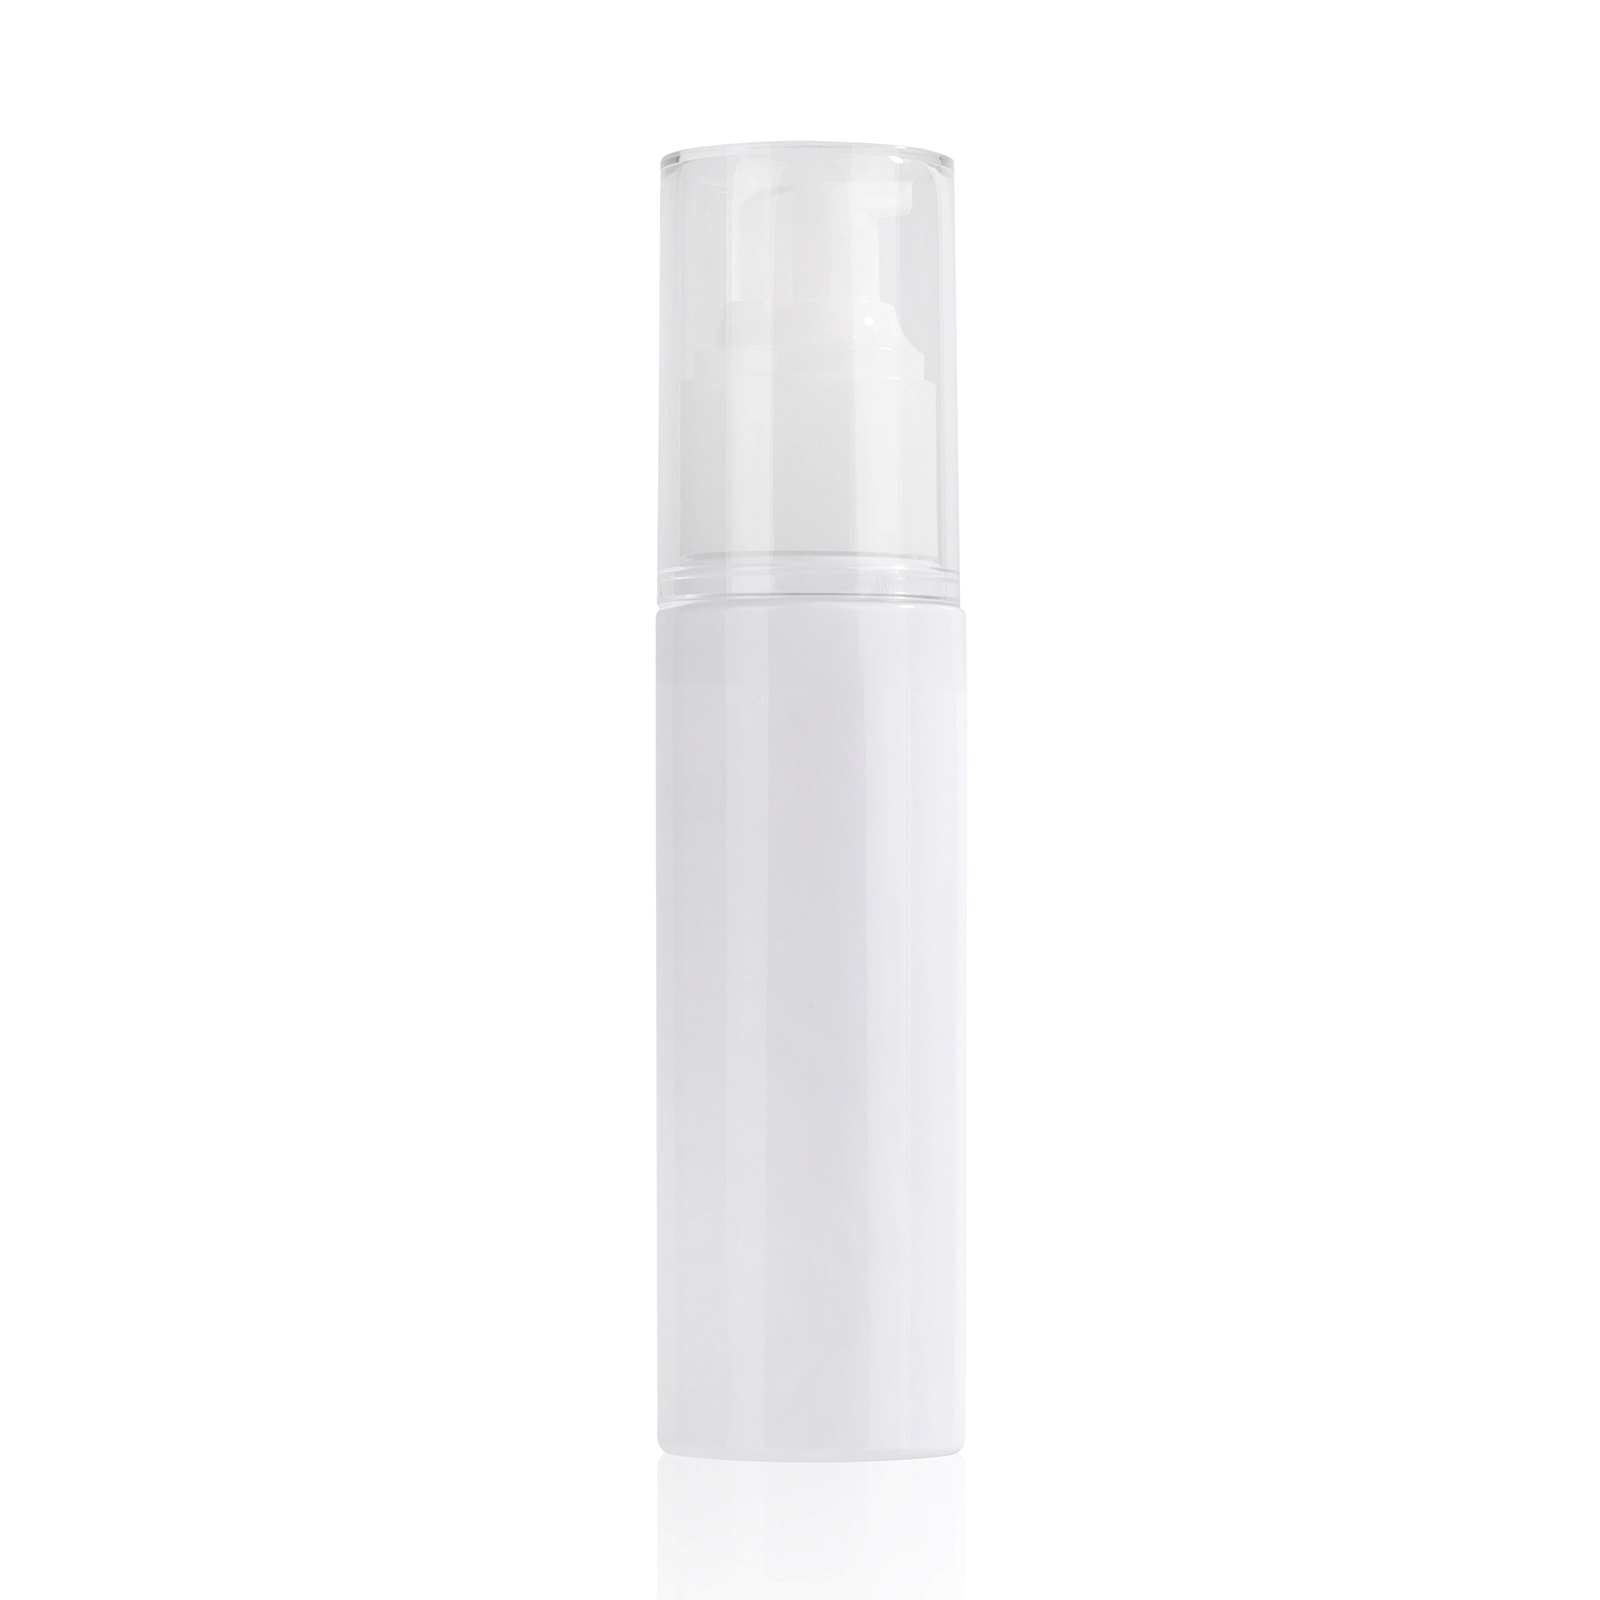 Factory Direct Marketing 100ml White Emulsion Bottle/ Spray Bottle/ Hair Essential Oil Bottle Pressure Pump Spray Color Custom